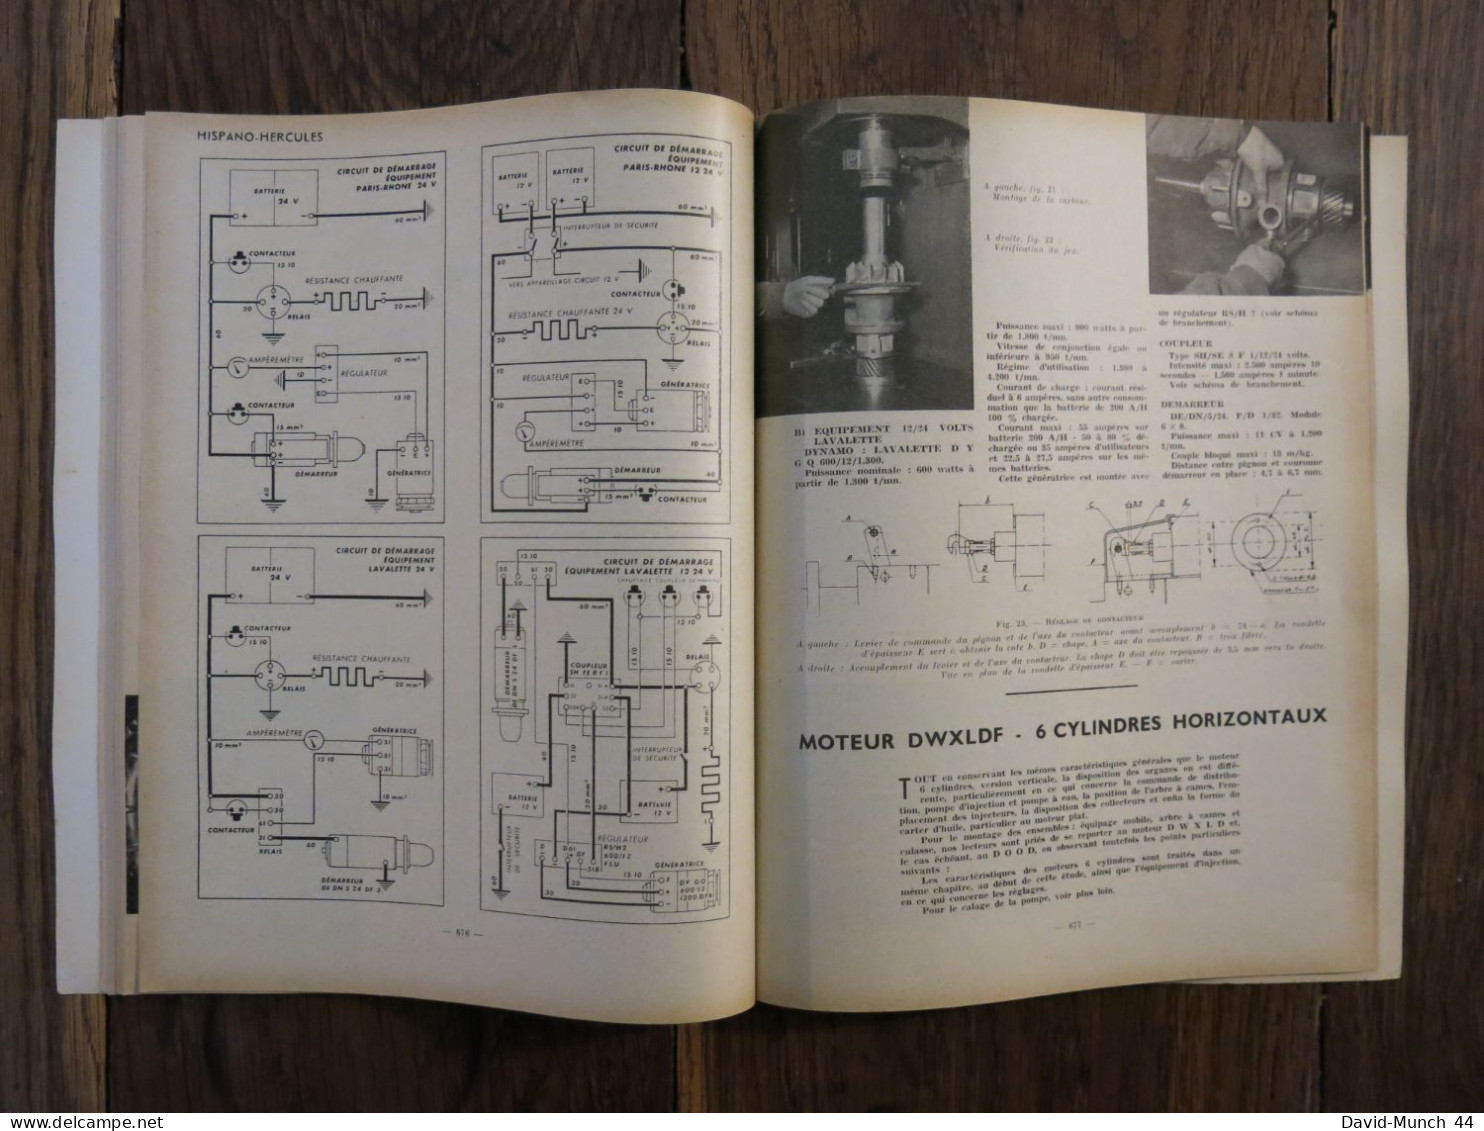 Revue technique Automobile # 101. Septembre 1954